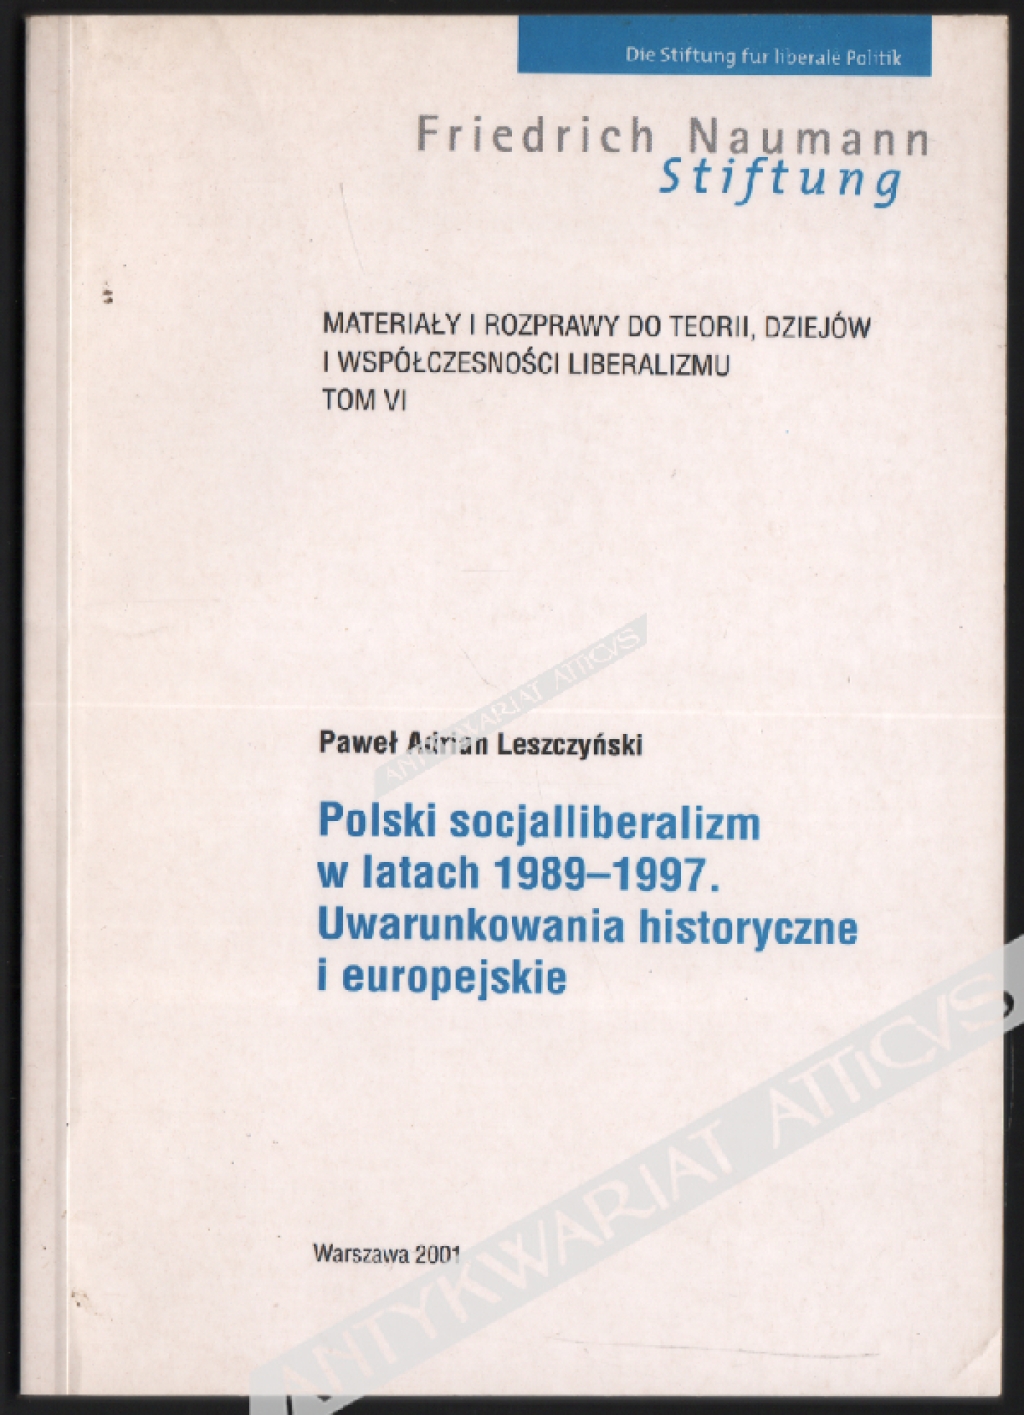 Polski socjalliberalizm w latach 1989-1997. Uwarunkowania historyczne i europejskie